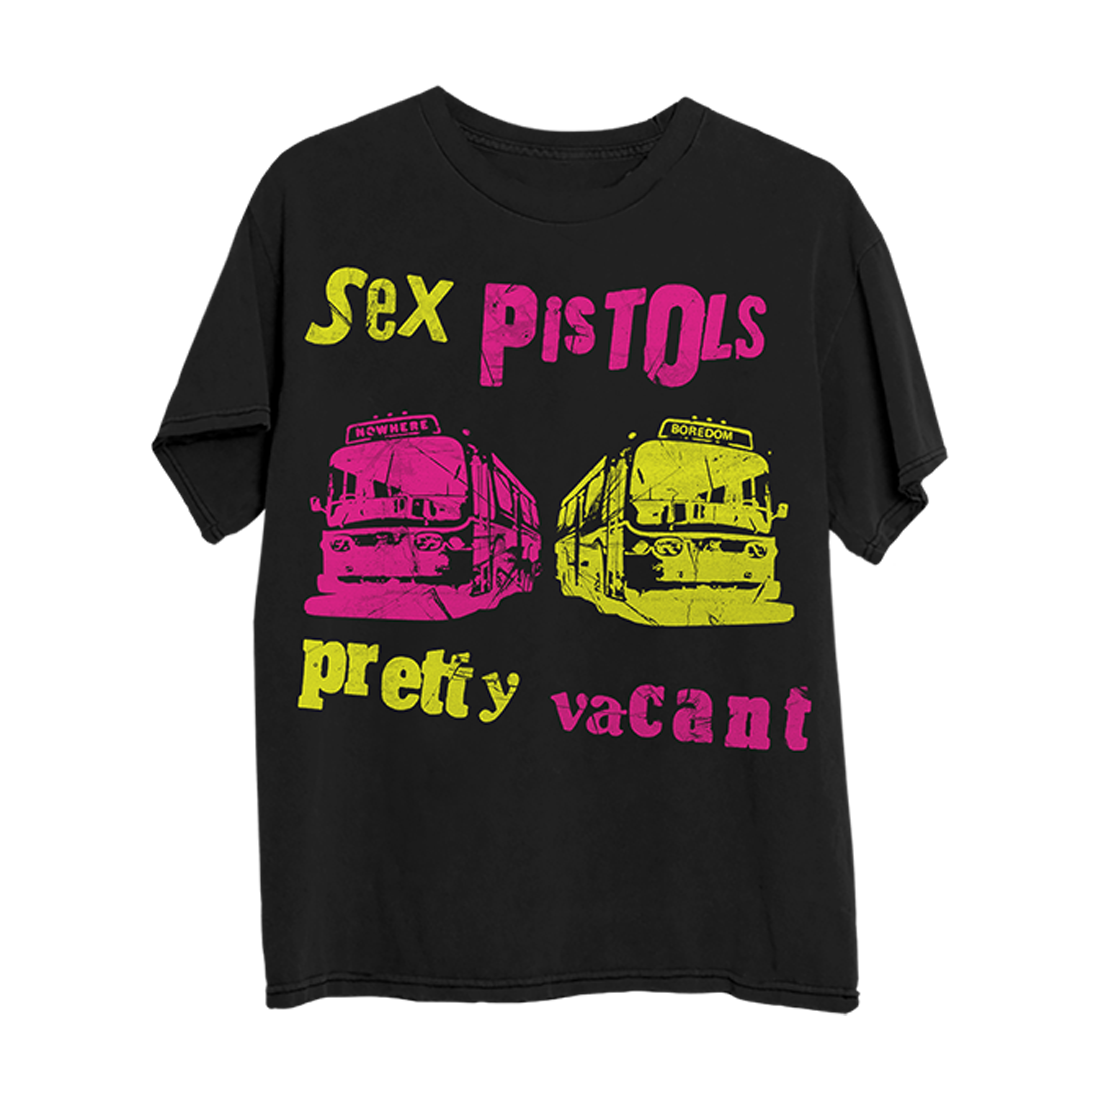 Sex Pistols - Official Store - Shop Exclusive Music & Merch